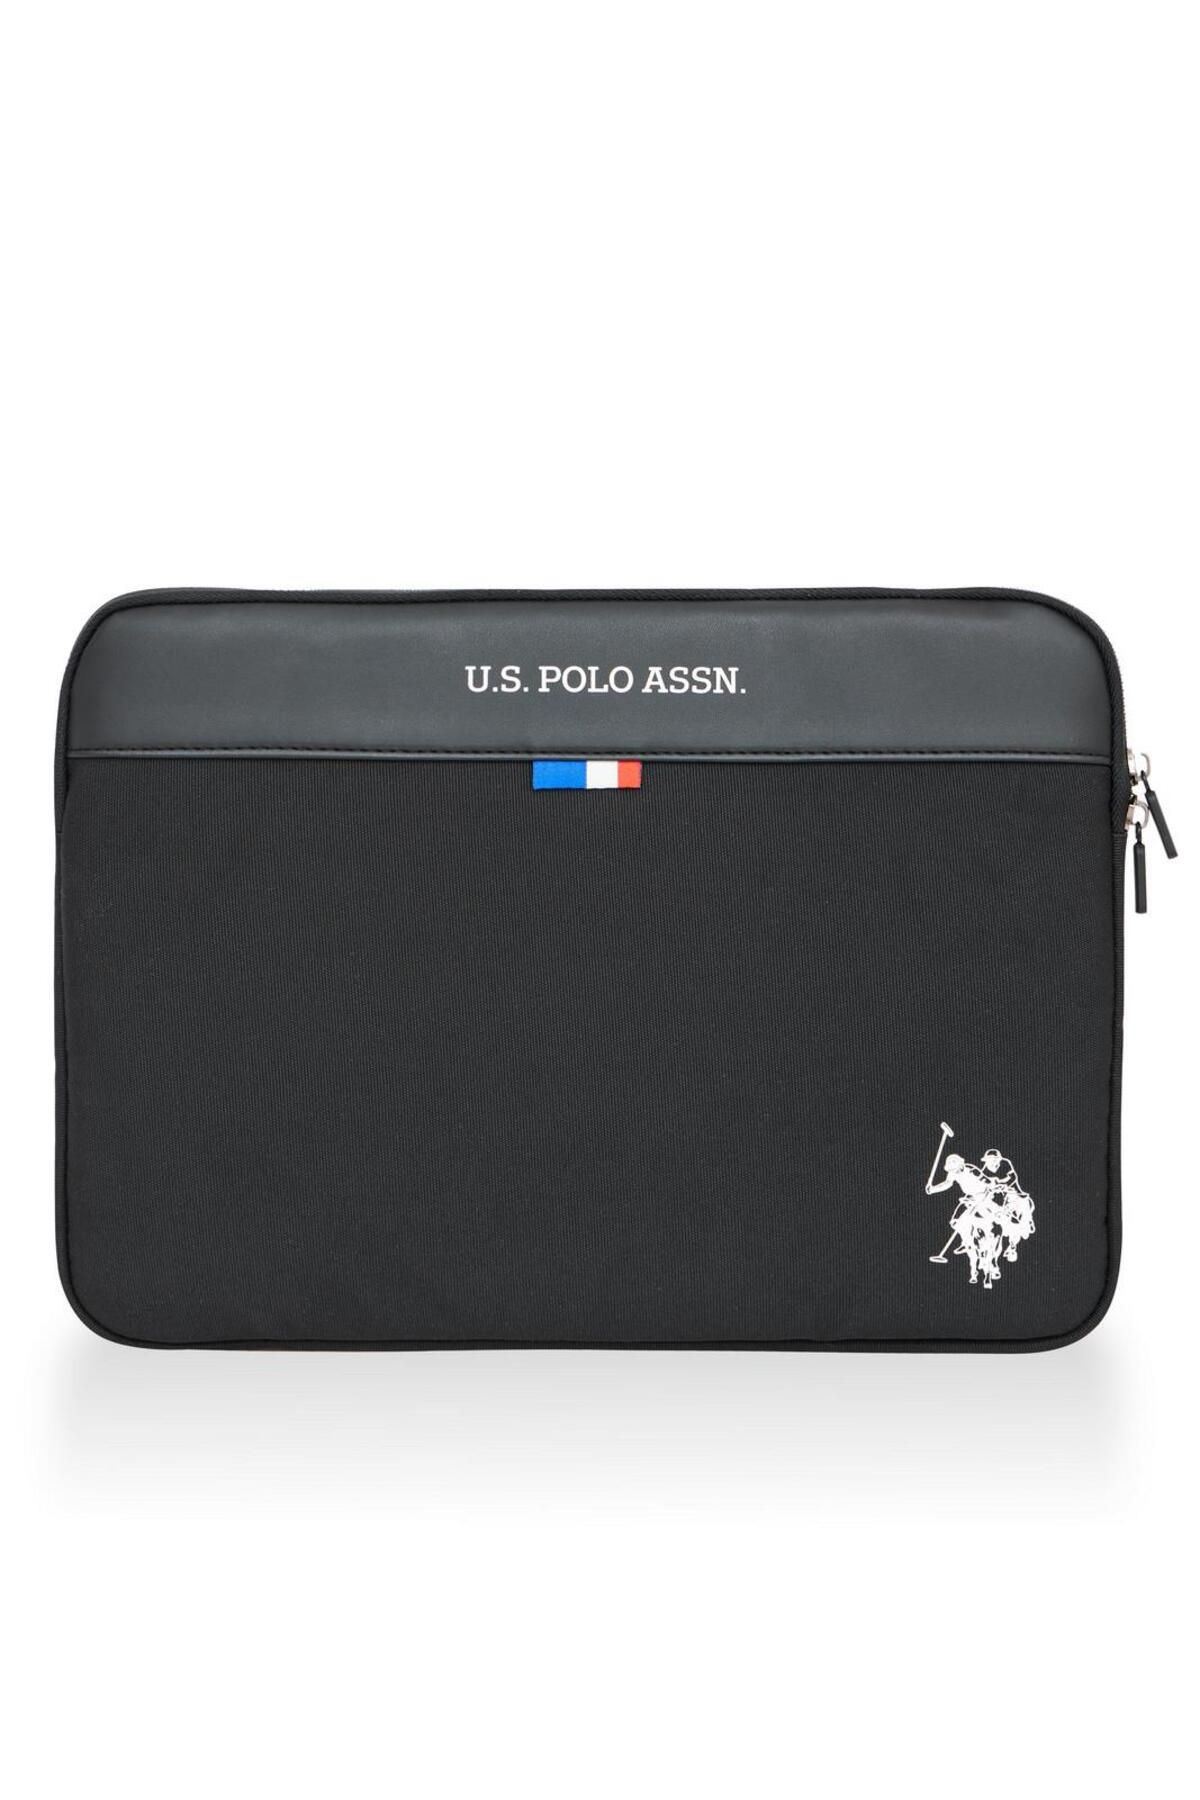 U.S. Polo Assn. Laptop Ve Evrak Çantası Plevr237009899